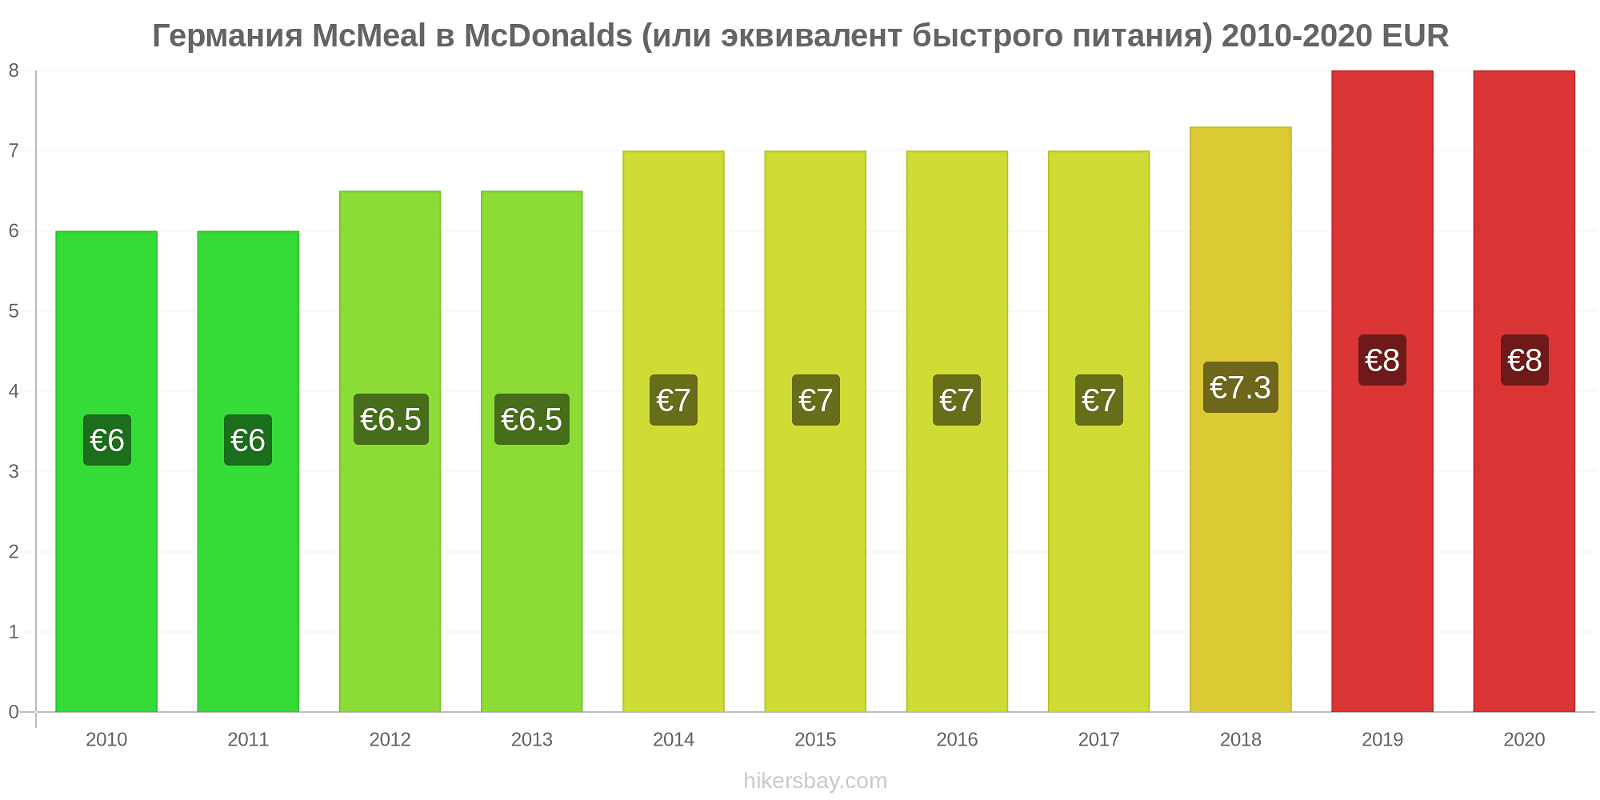 Германия изменения цен McMeal в McDonalds (или эквивалент быстрого питания) hikersbay.com